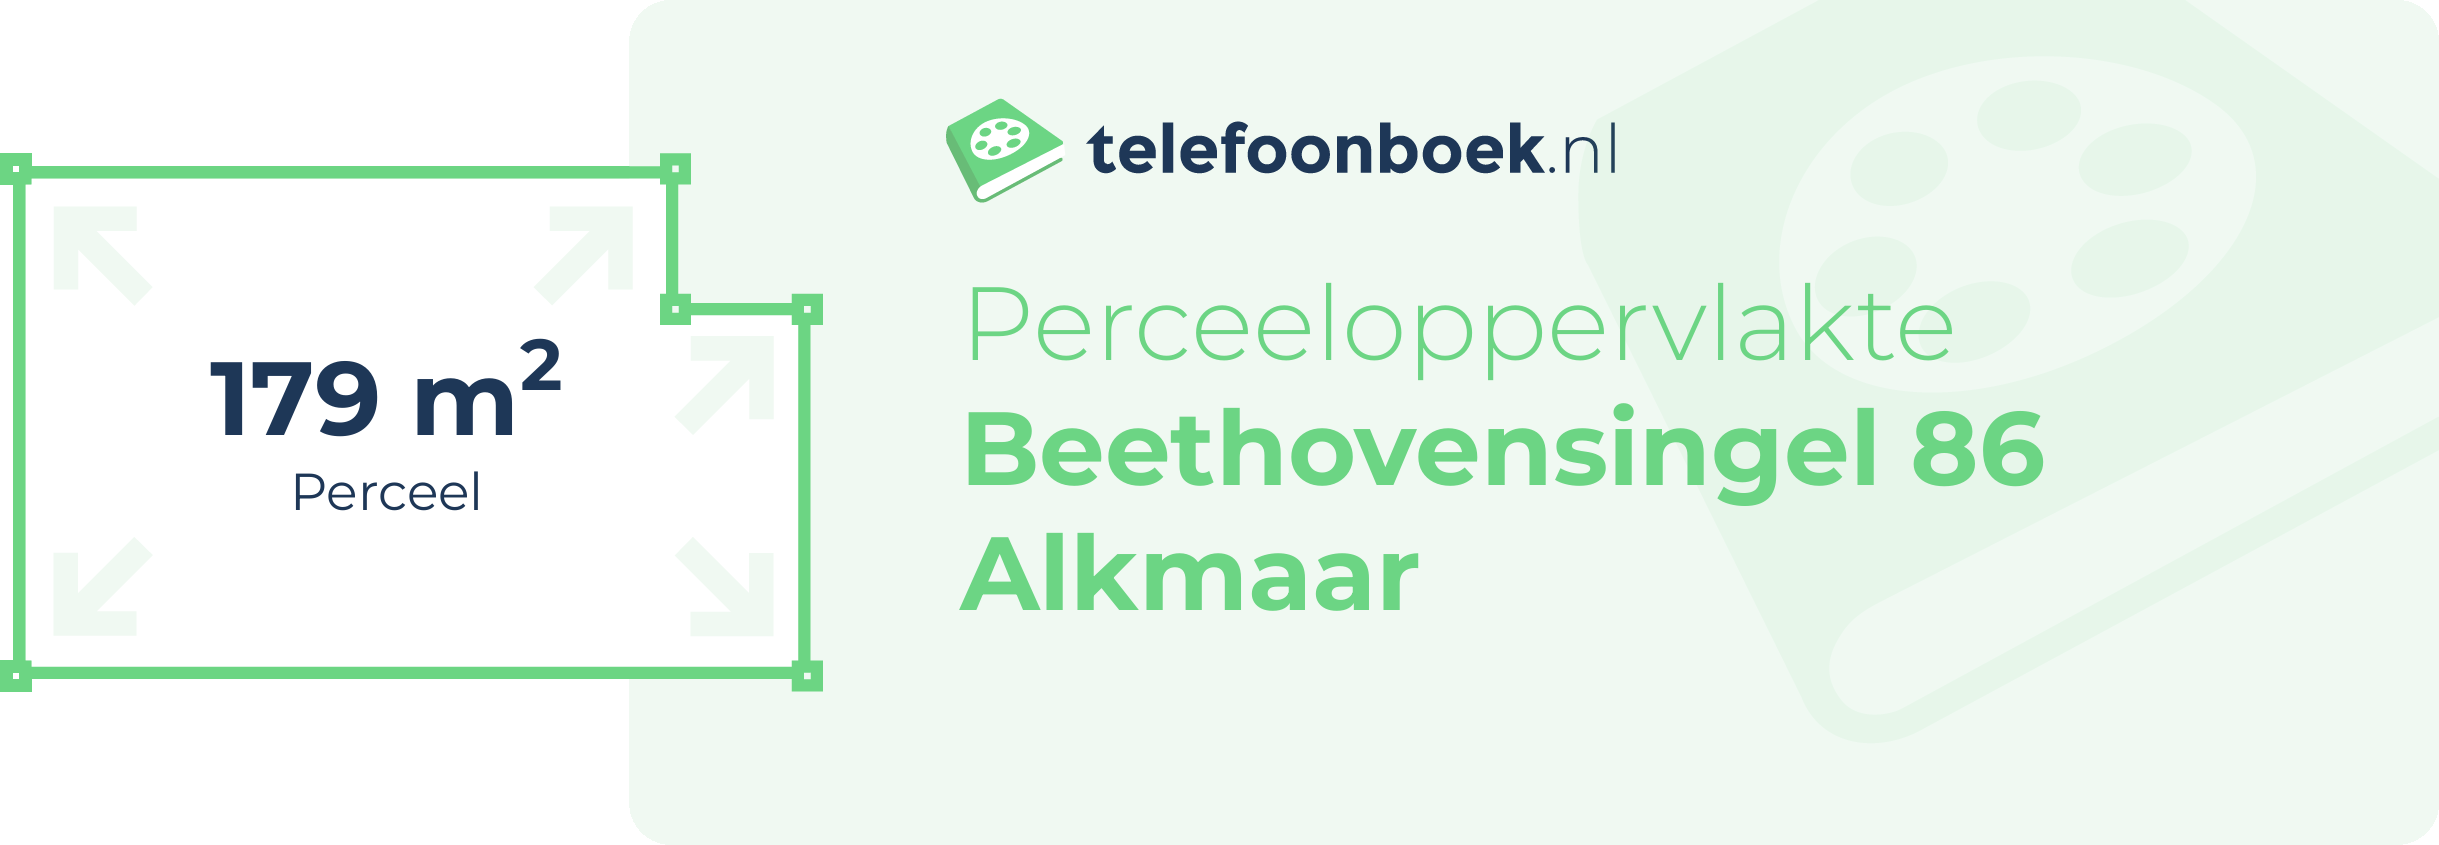 Perceeloppervlakte Beethovensingel 86 Alkmaar